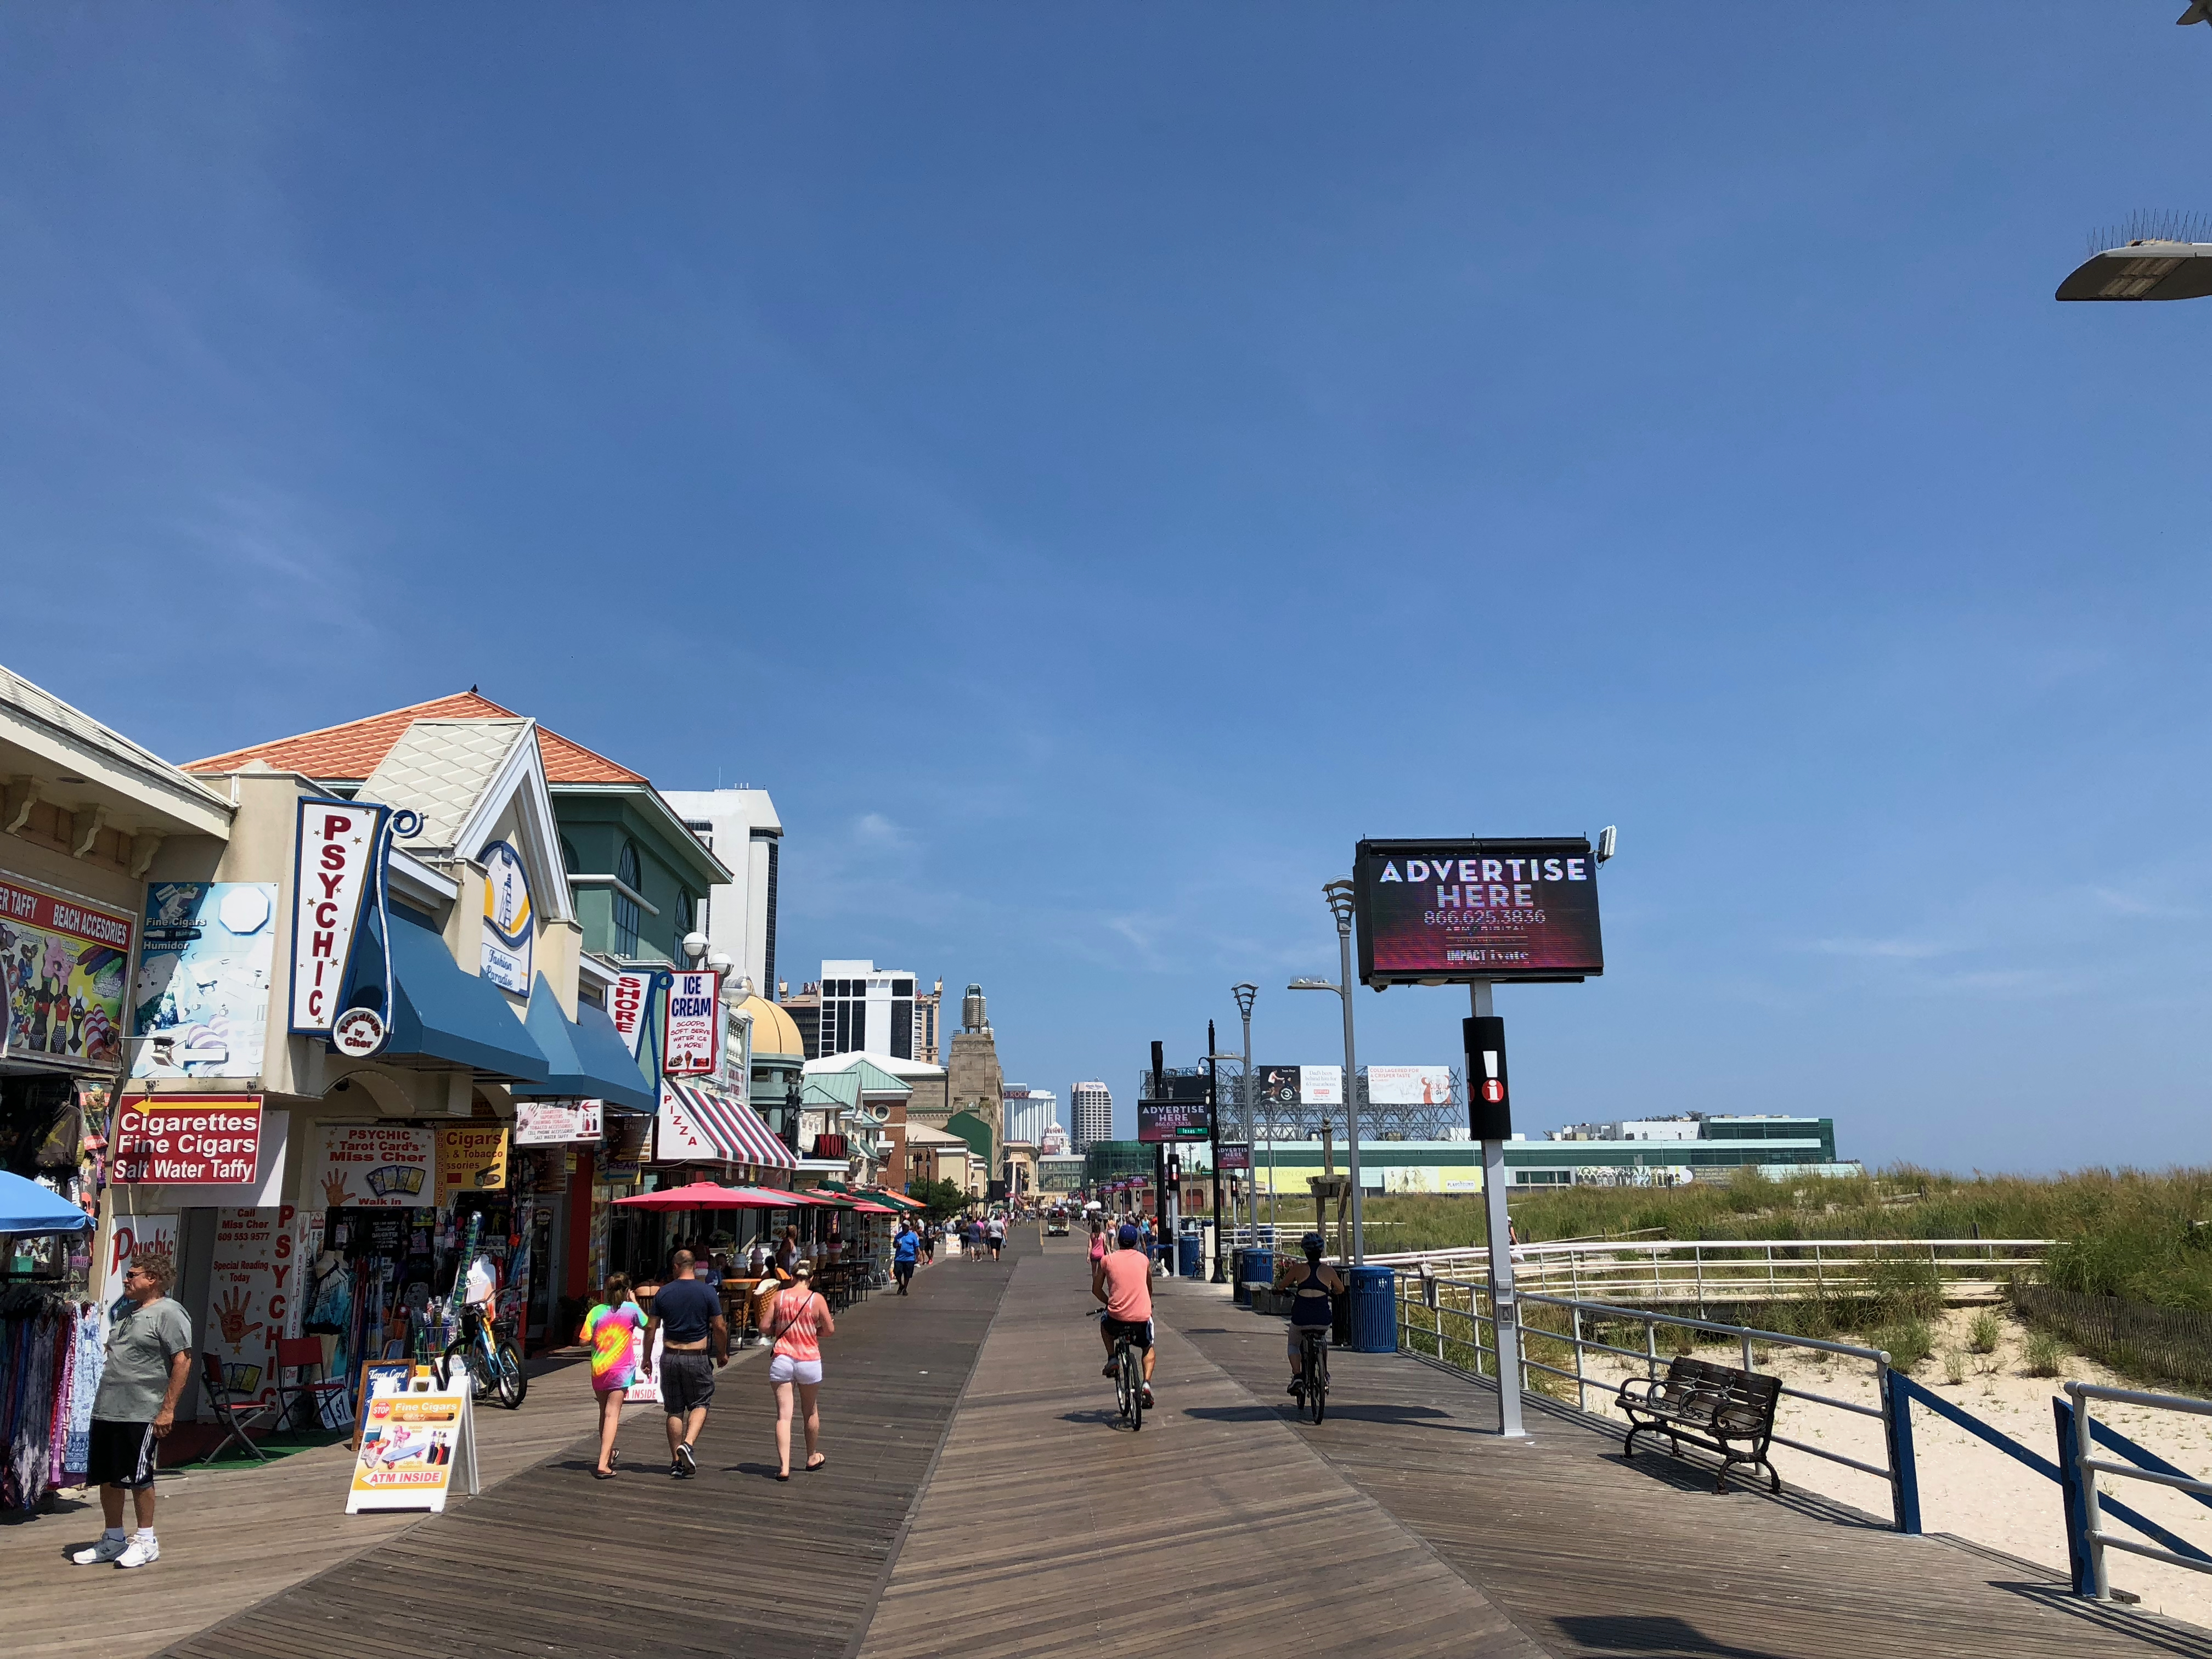 Beach promenade in Atlantic City